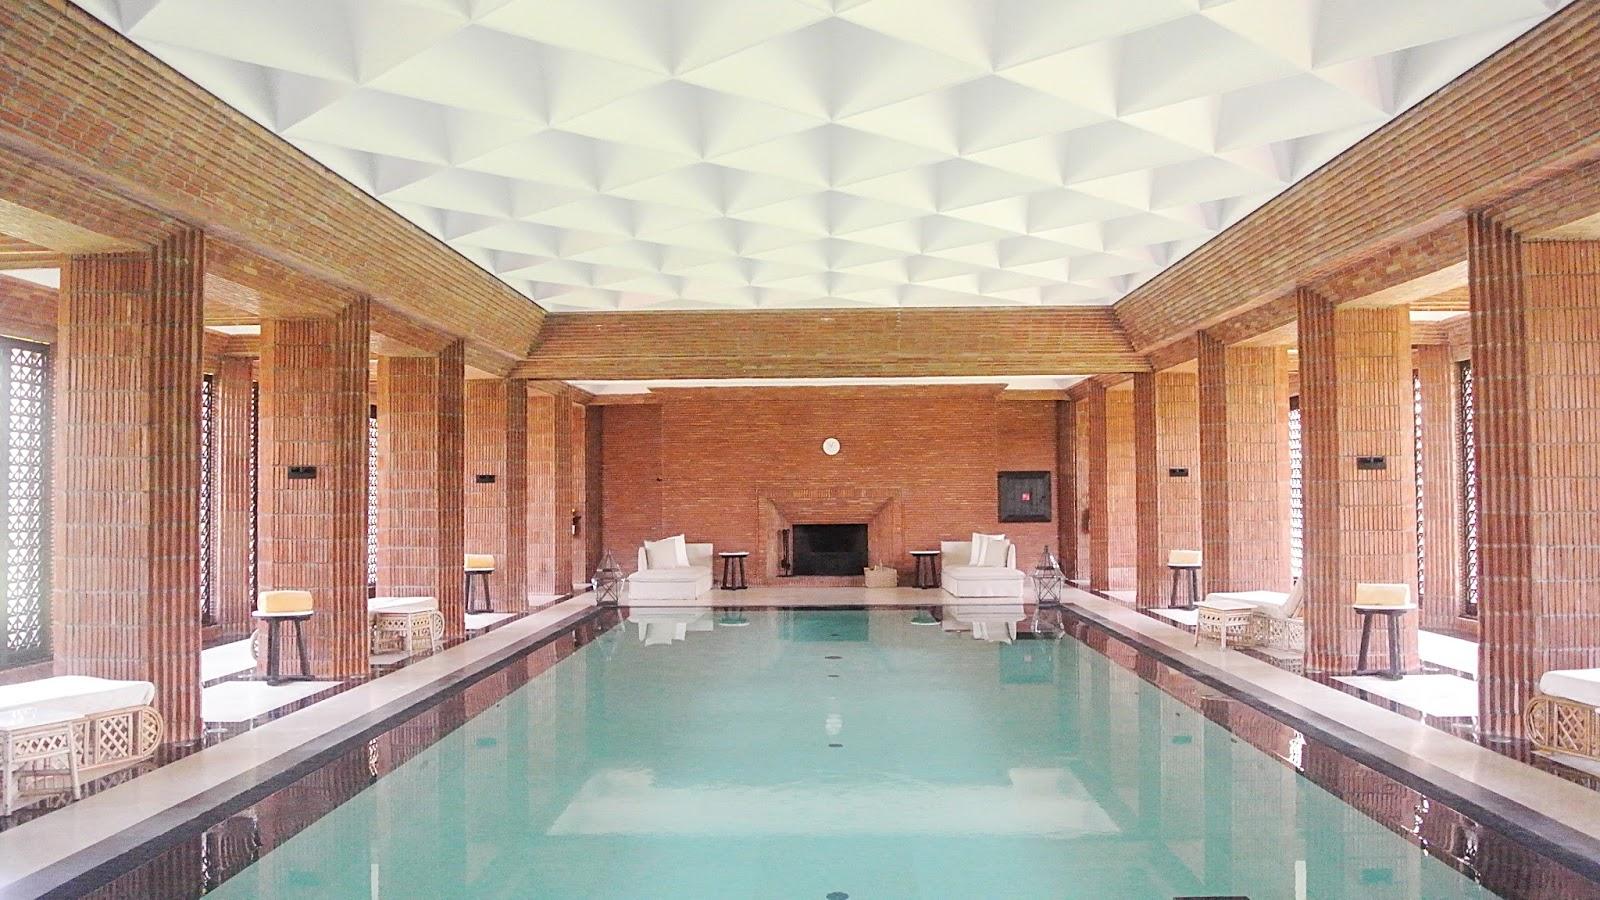 Des hôtels avec piscine couverte à Marrakech - piscine interieur